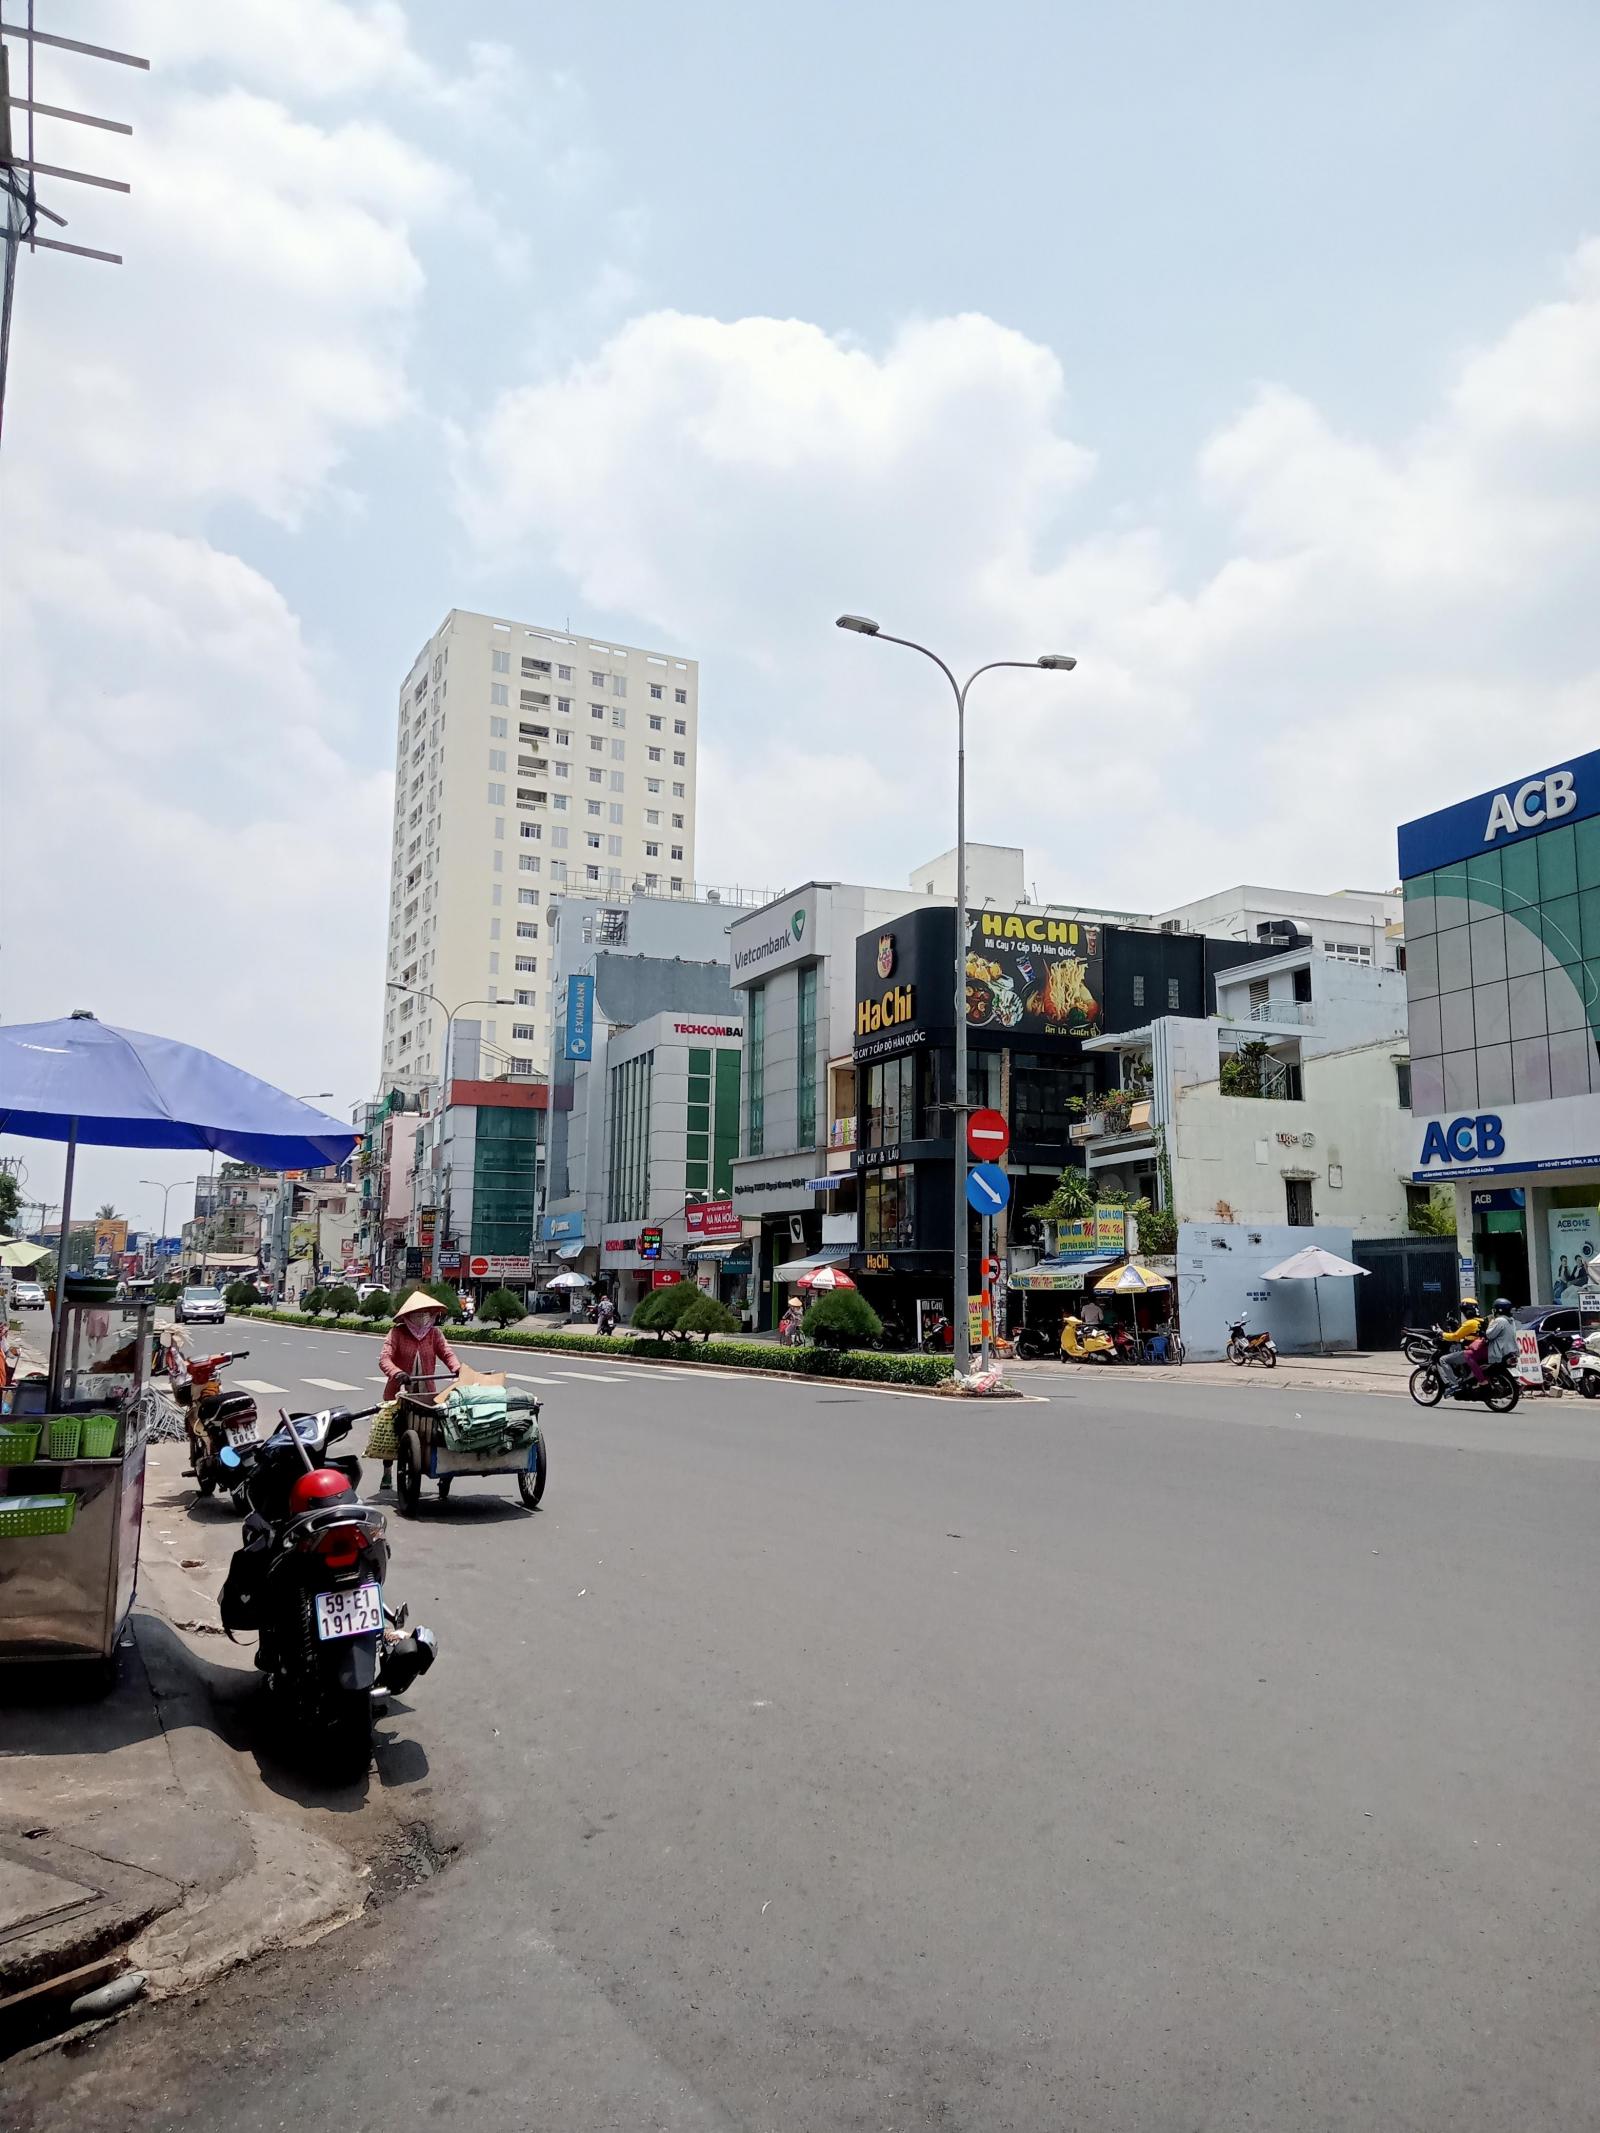 Bán nhà mặt tiền Ngô Gia Tự - trung tâm quận 10 - nhà 3 lầu, 3 phòng ngủ, gần các nhà xe Phương Trang, Thành Bưởi, Giá 16 tỷ